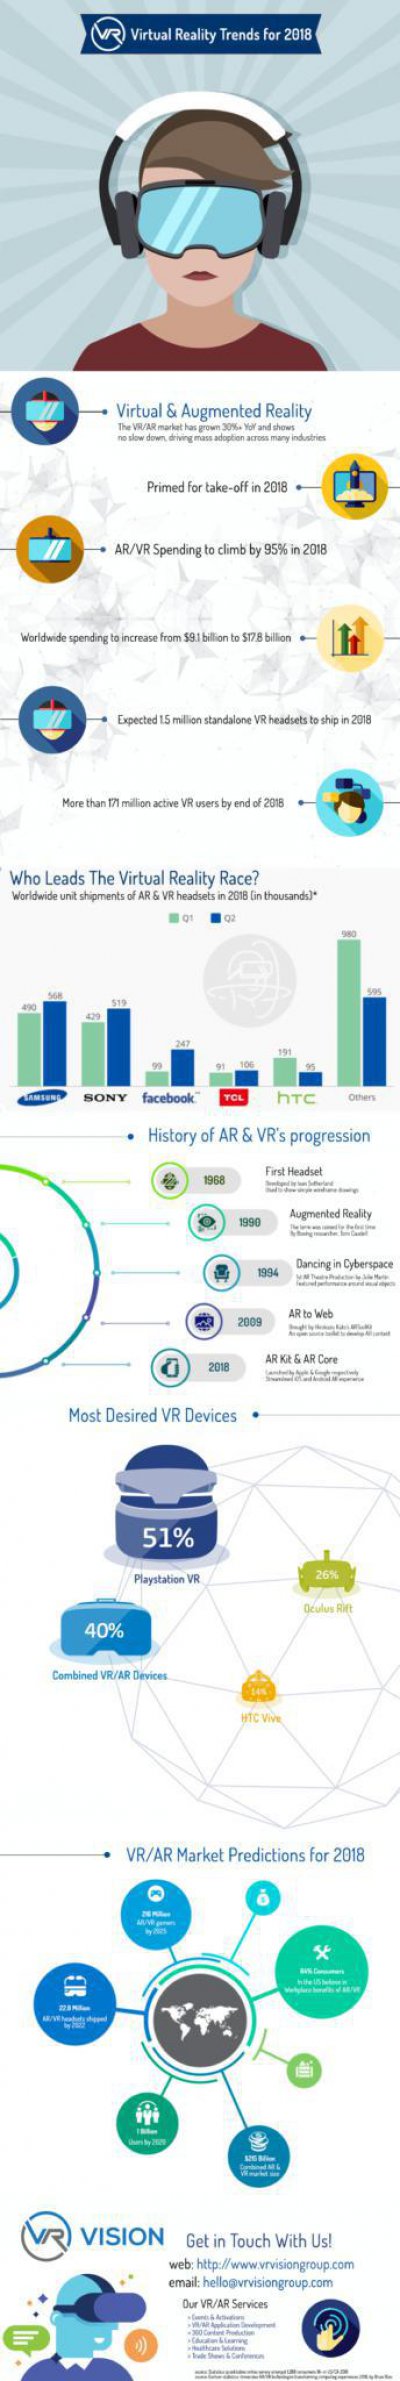 VR Visions发布市场调研 VR头显需求强劲